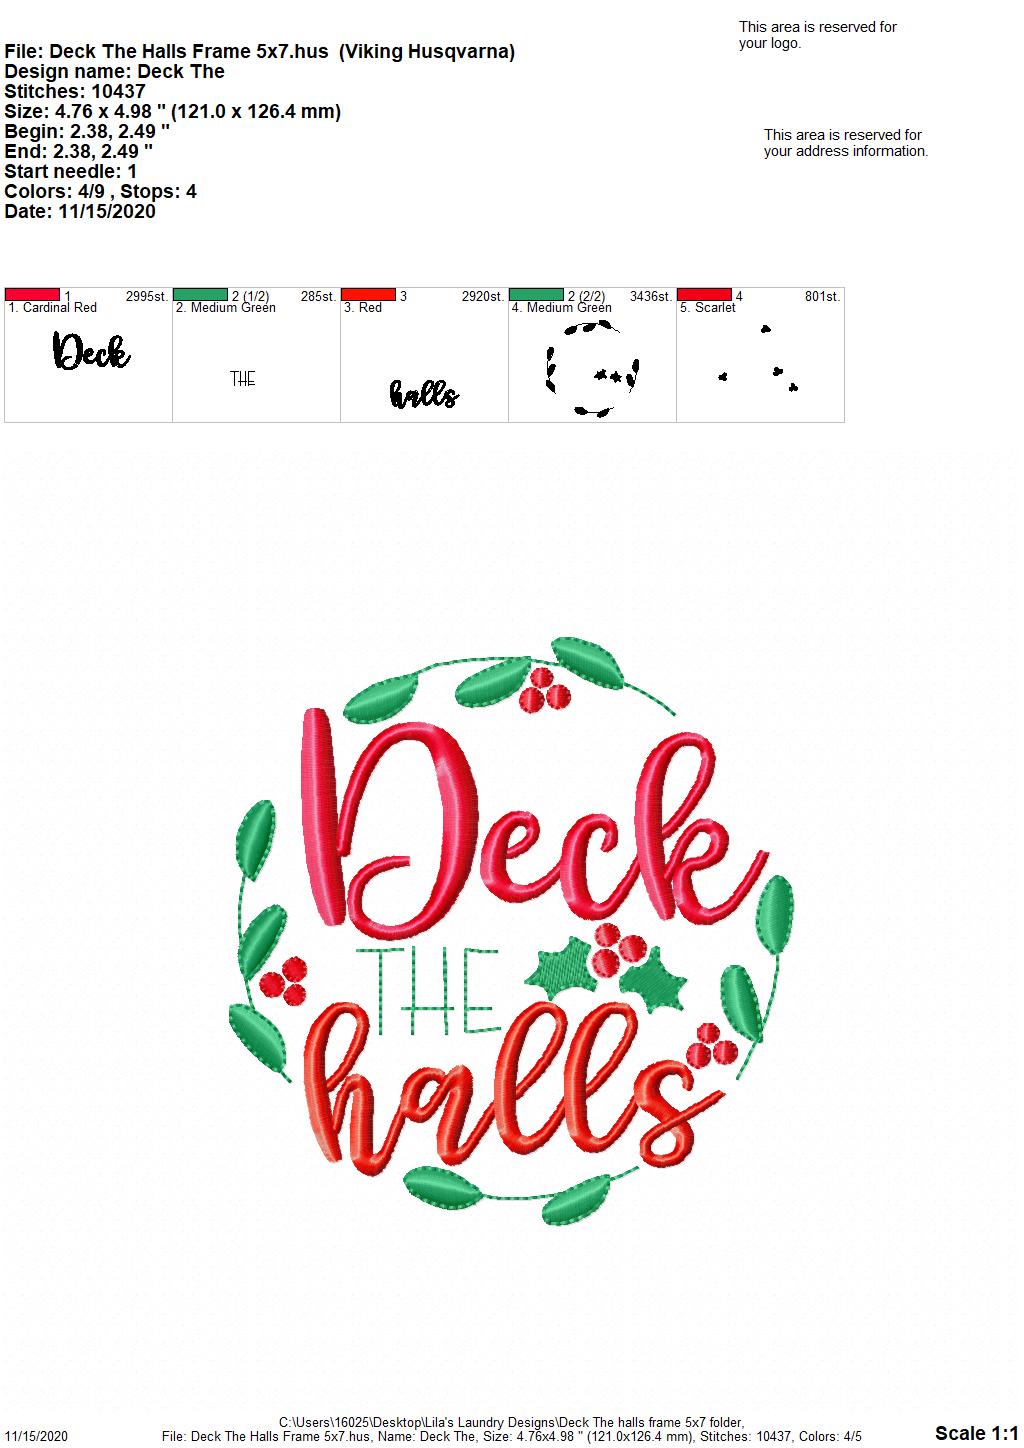 Deck the halls frame - Digital Embroidery Design